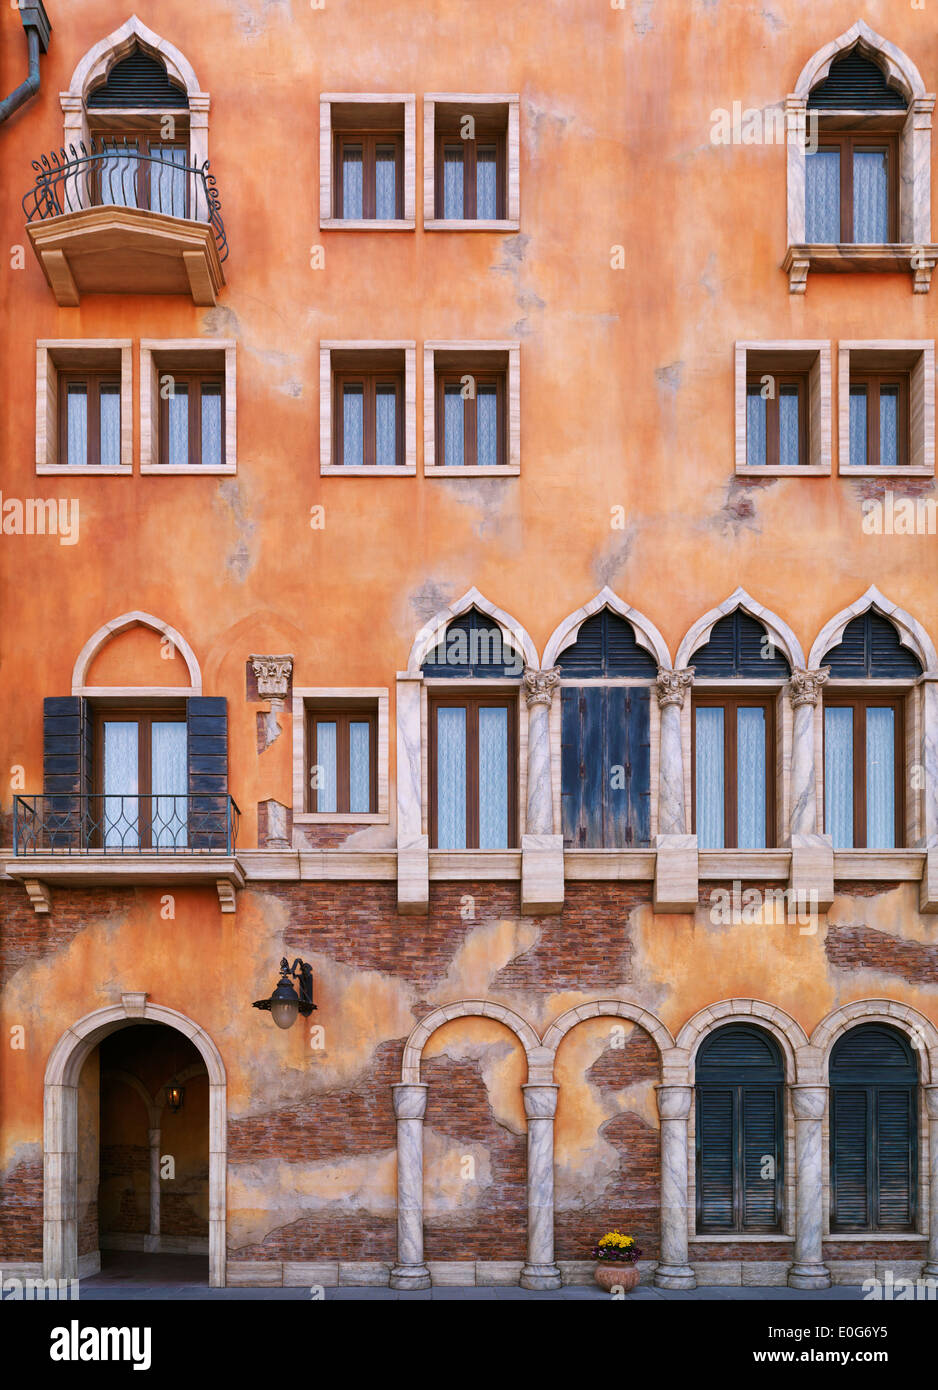 Wand mit Fenstern eines Gebäudes im venezianischen gotischen Baustil. Architektur Detail Textur. Stockfoto